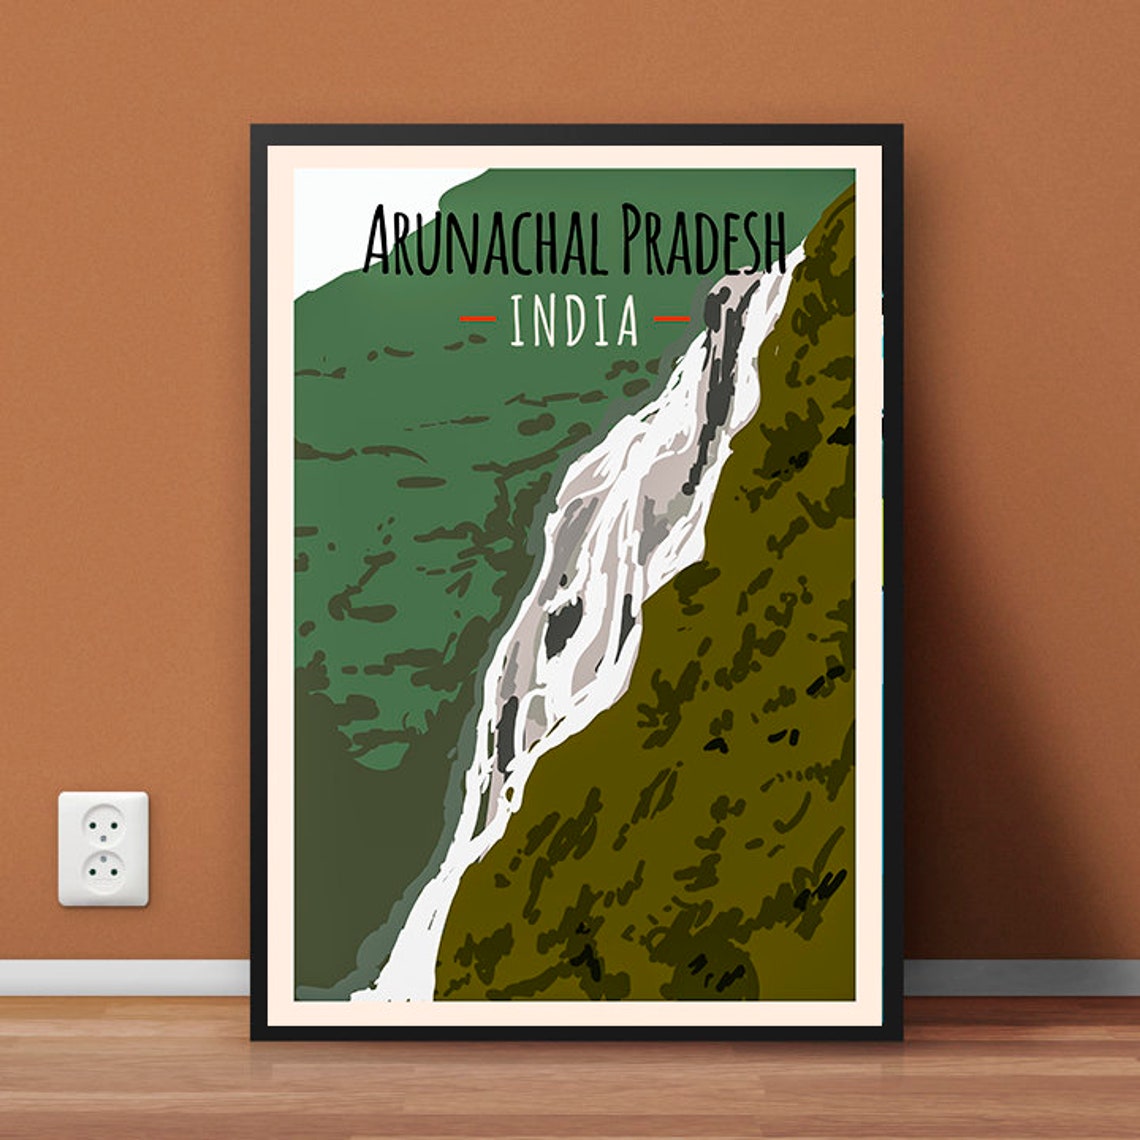 arunachal pradesh tourism advertisement